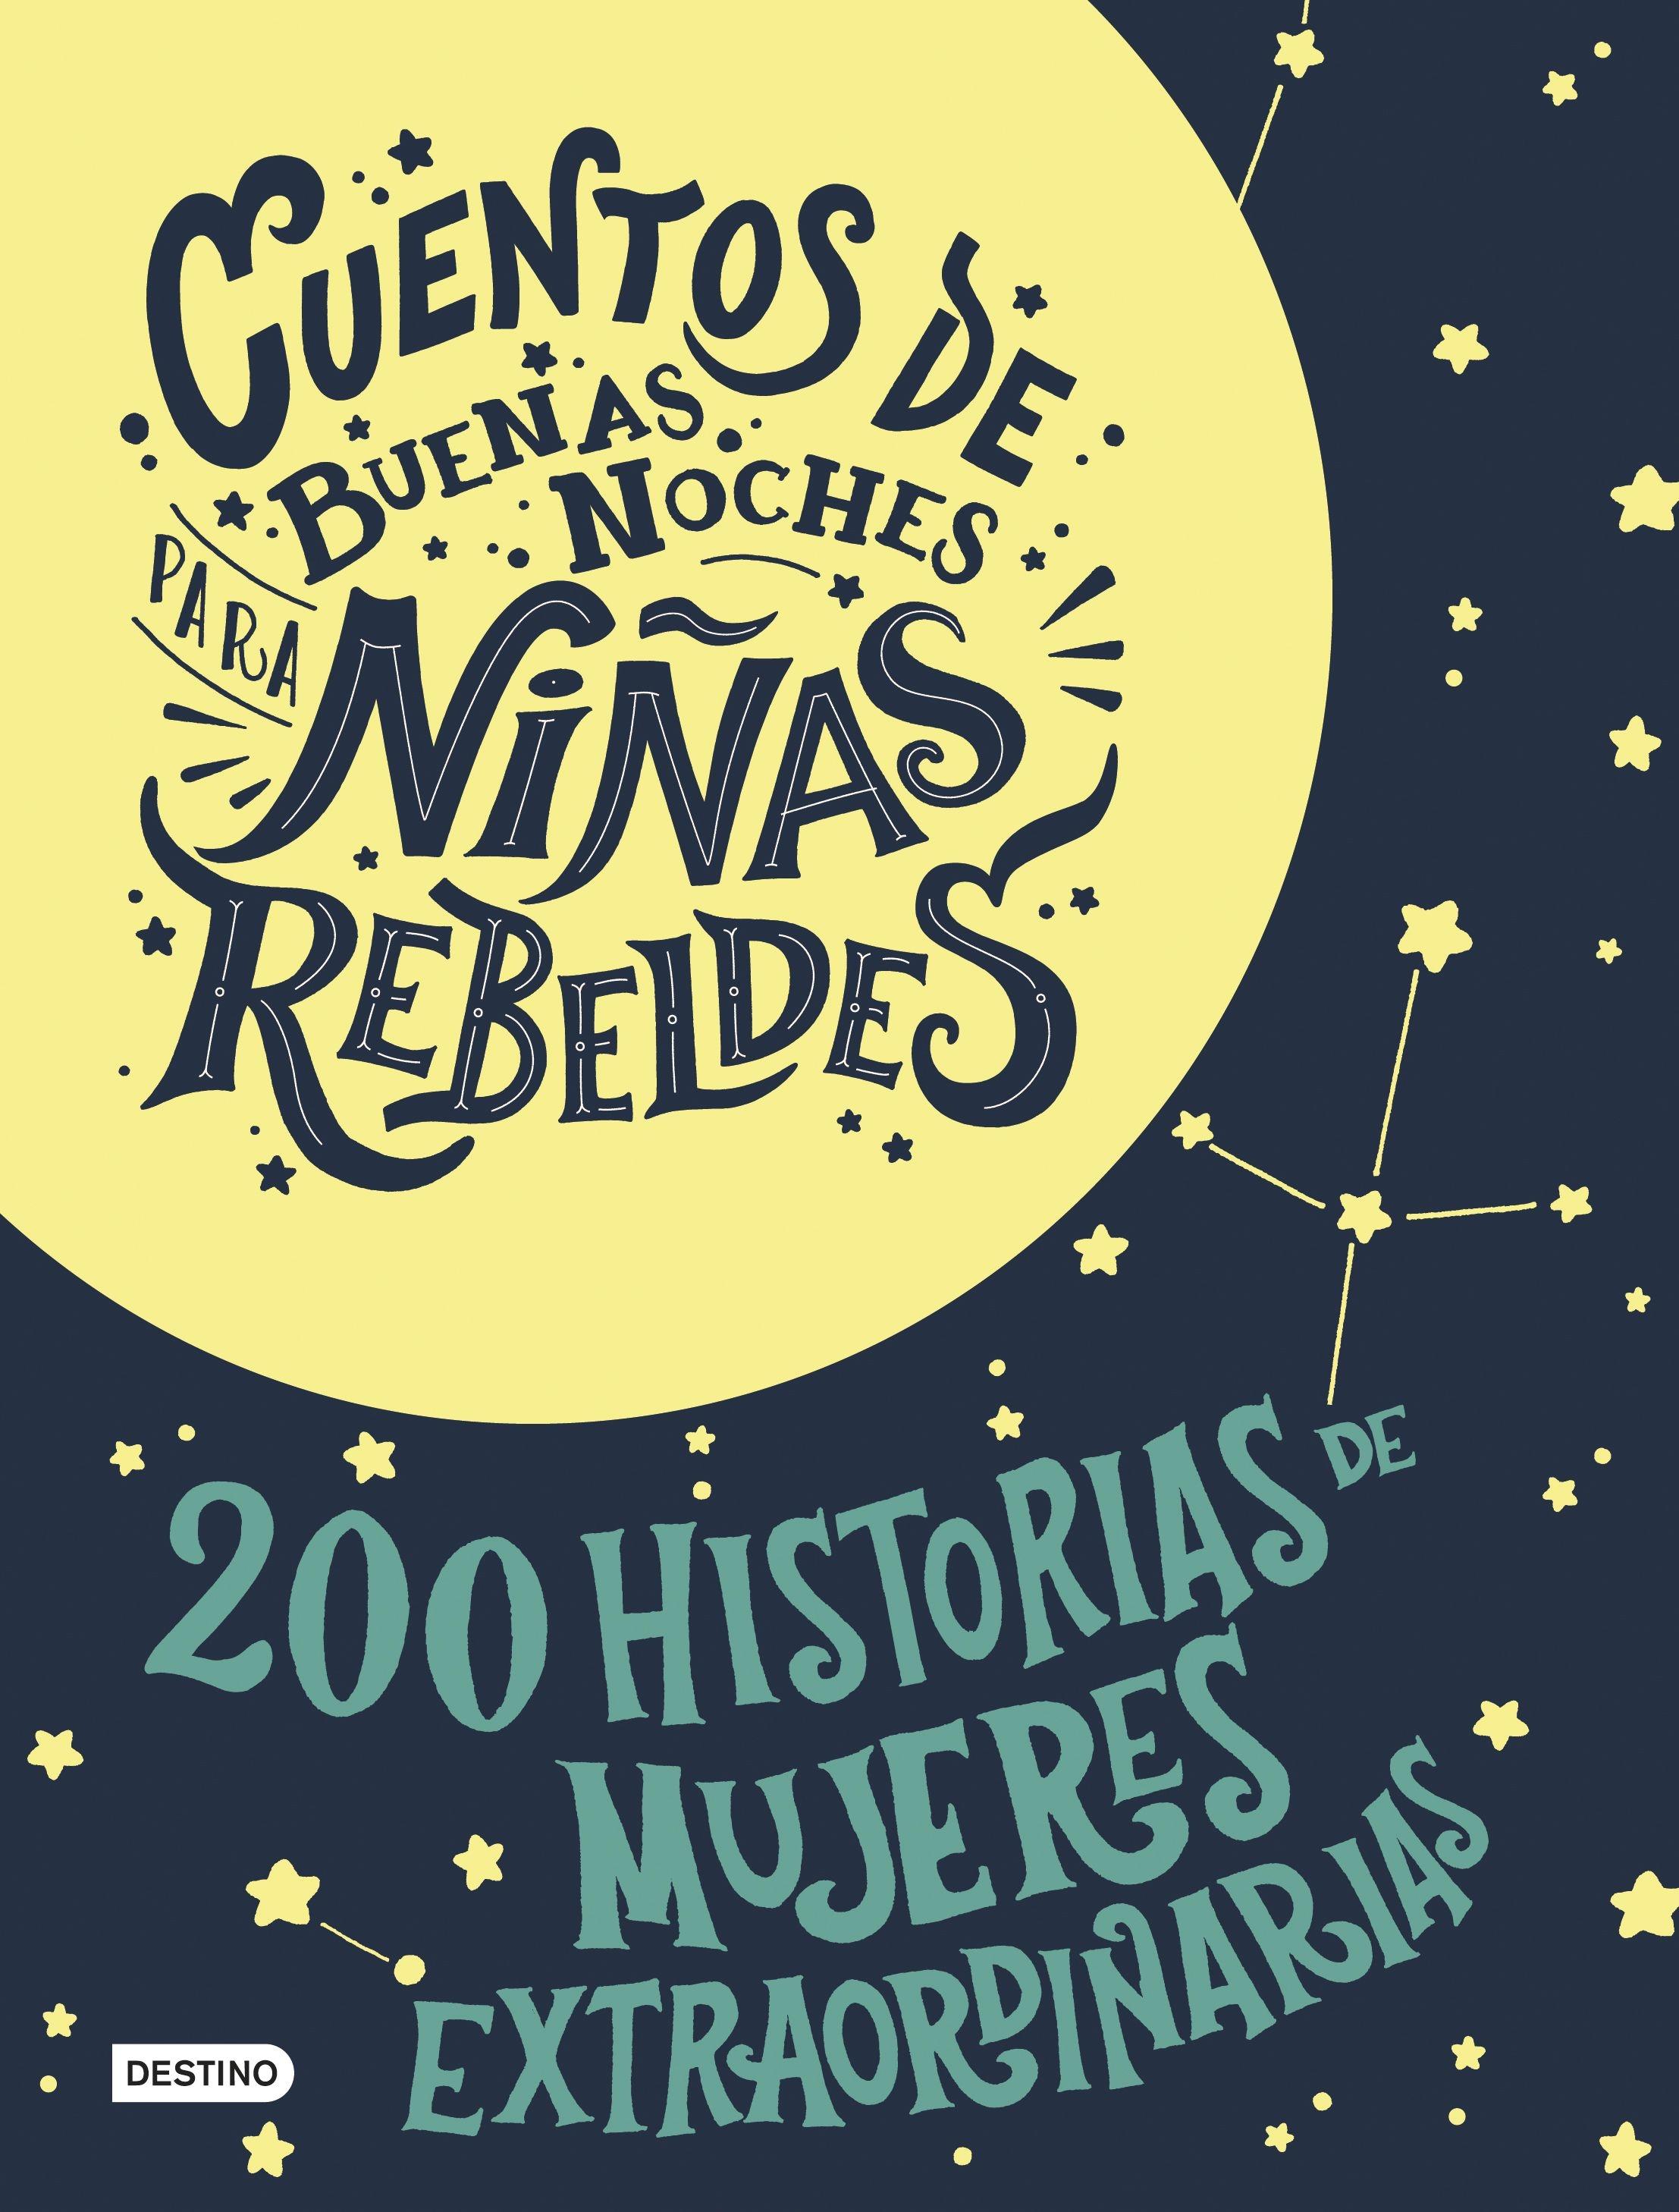 Estuche Cuentos de buenas noches para niñas rebeldes "200 Historias de mujeres extraordinarias + Bolsa de regalo"